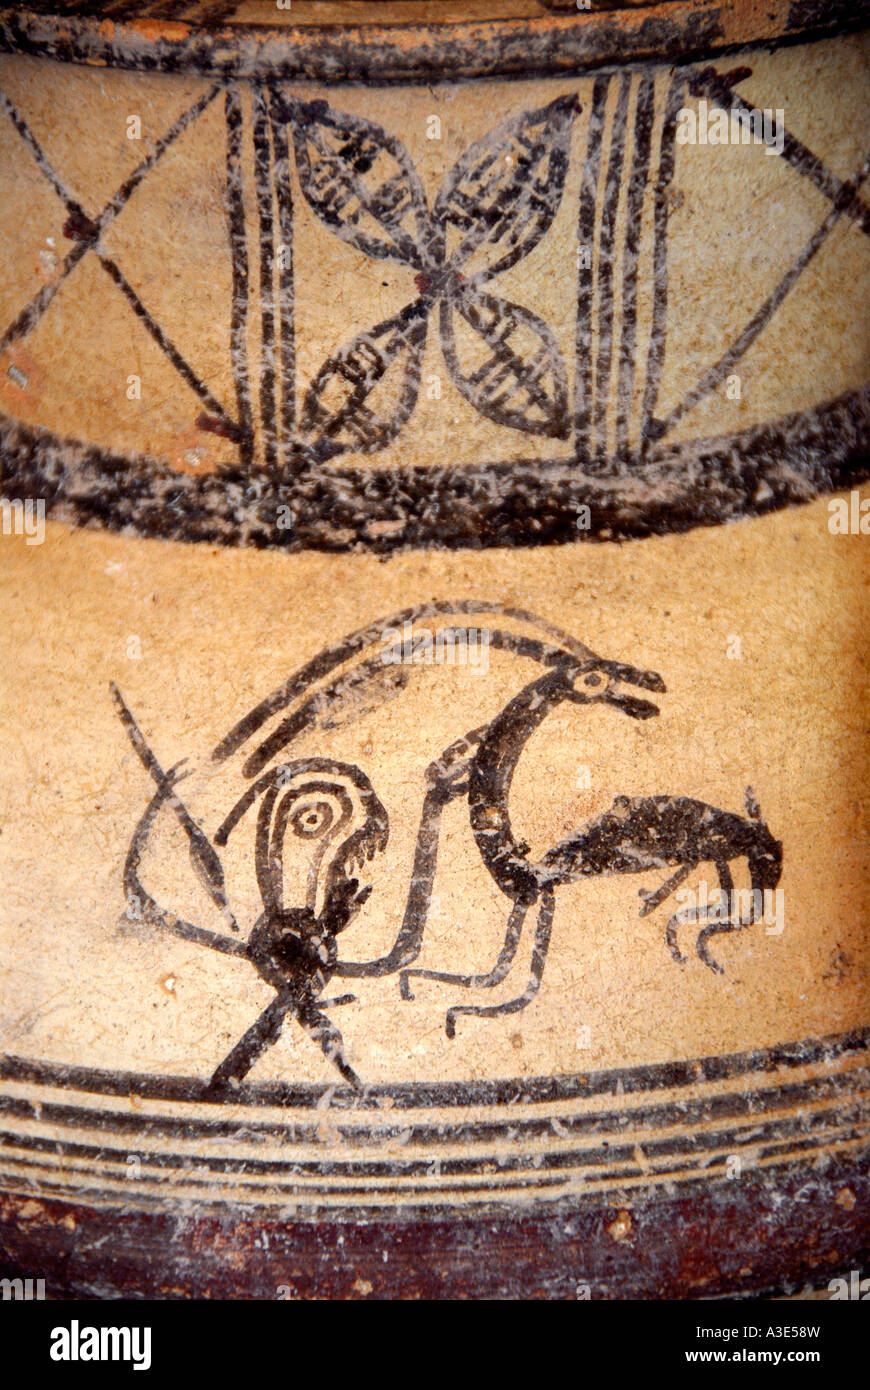 Ricerca archeologica la pittura di una scena di caccia sul Greco antico caraffa nel museo archeologico vicino Apostolo Apostolos Foto Stock